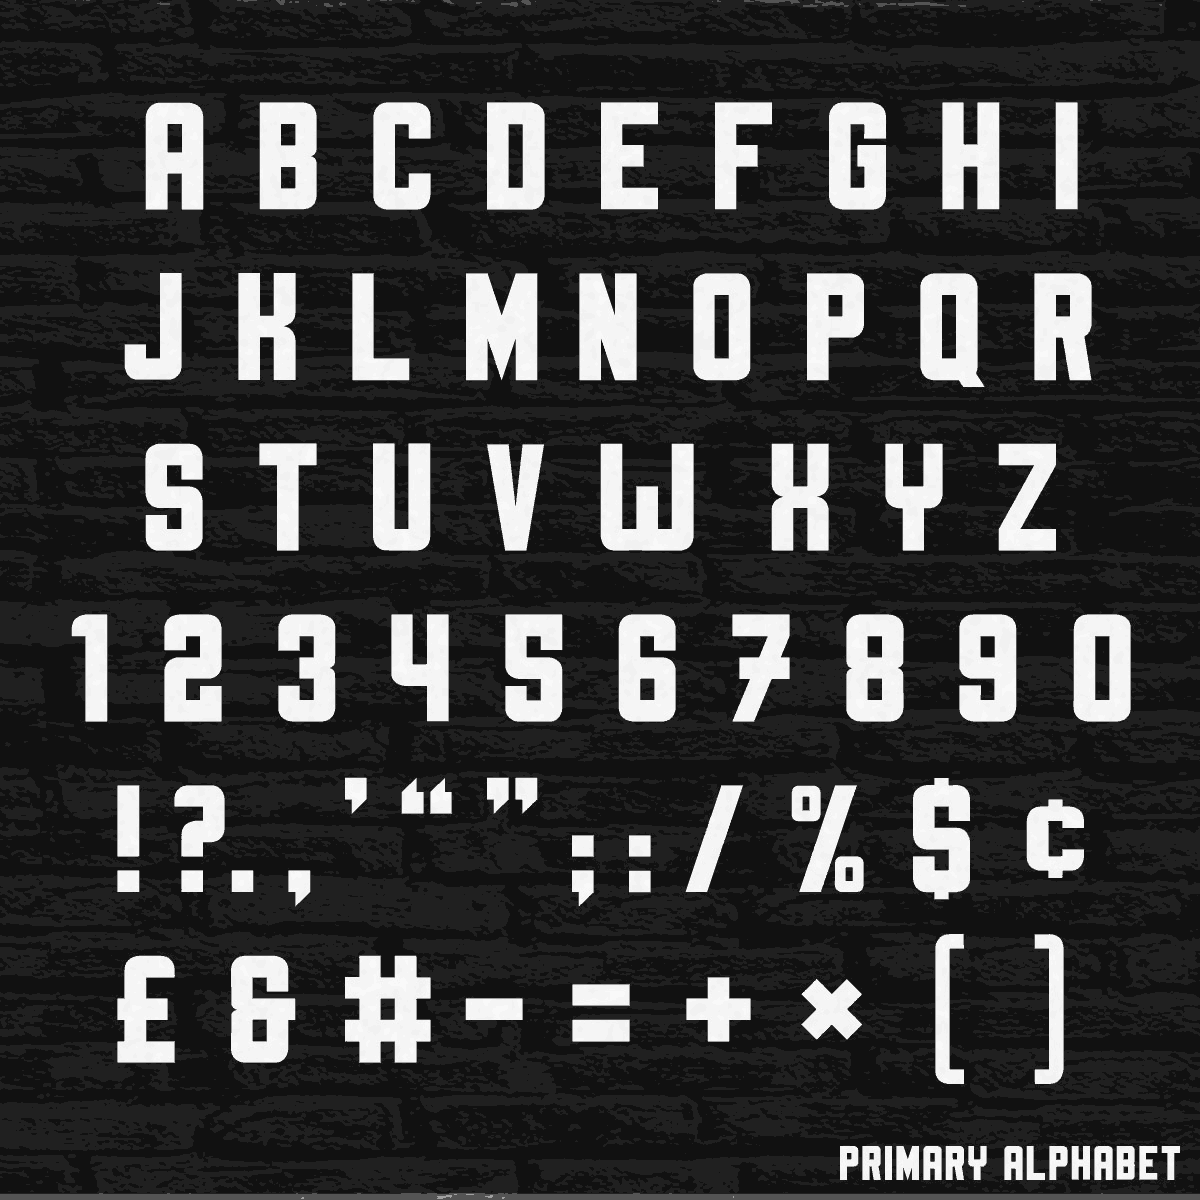 Forge 47's primary alphabet